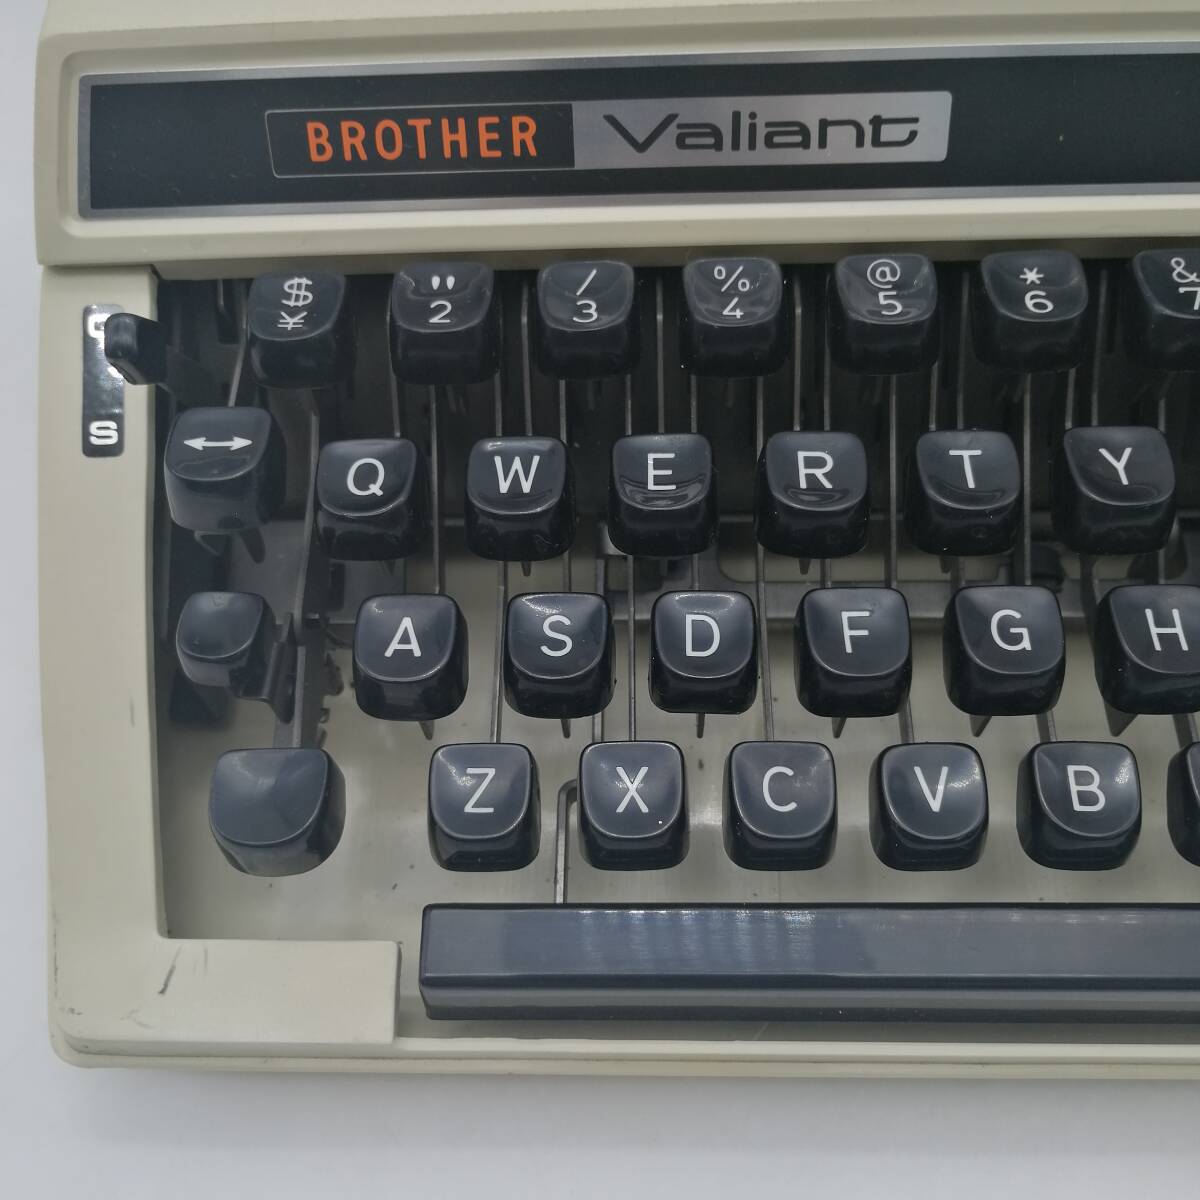 t2726 BROTHER ブラザー Valiant タイプライター コレクション 713 昭和レトロ アンティーク 中古品 現状品 電化製品の画像3